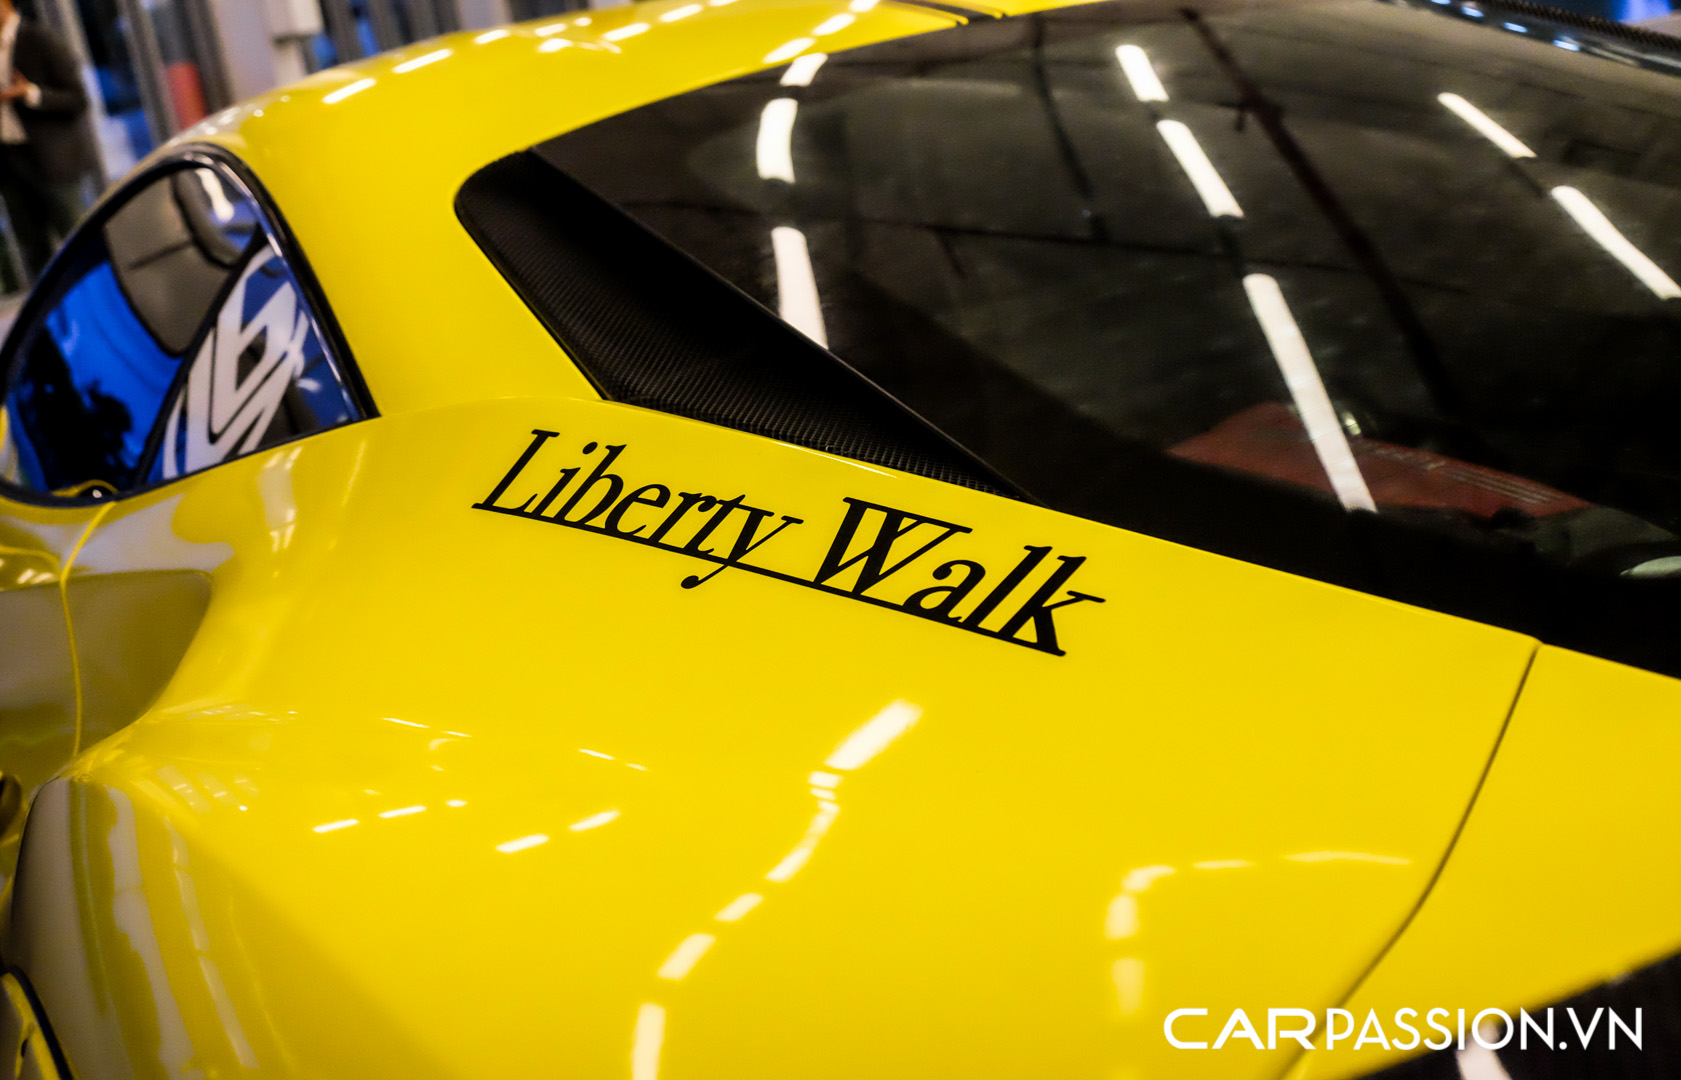 CP-Ferrari 488 Liberty Walk (27).jpg